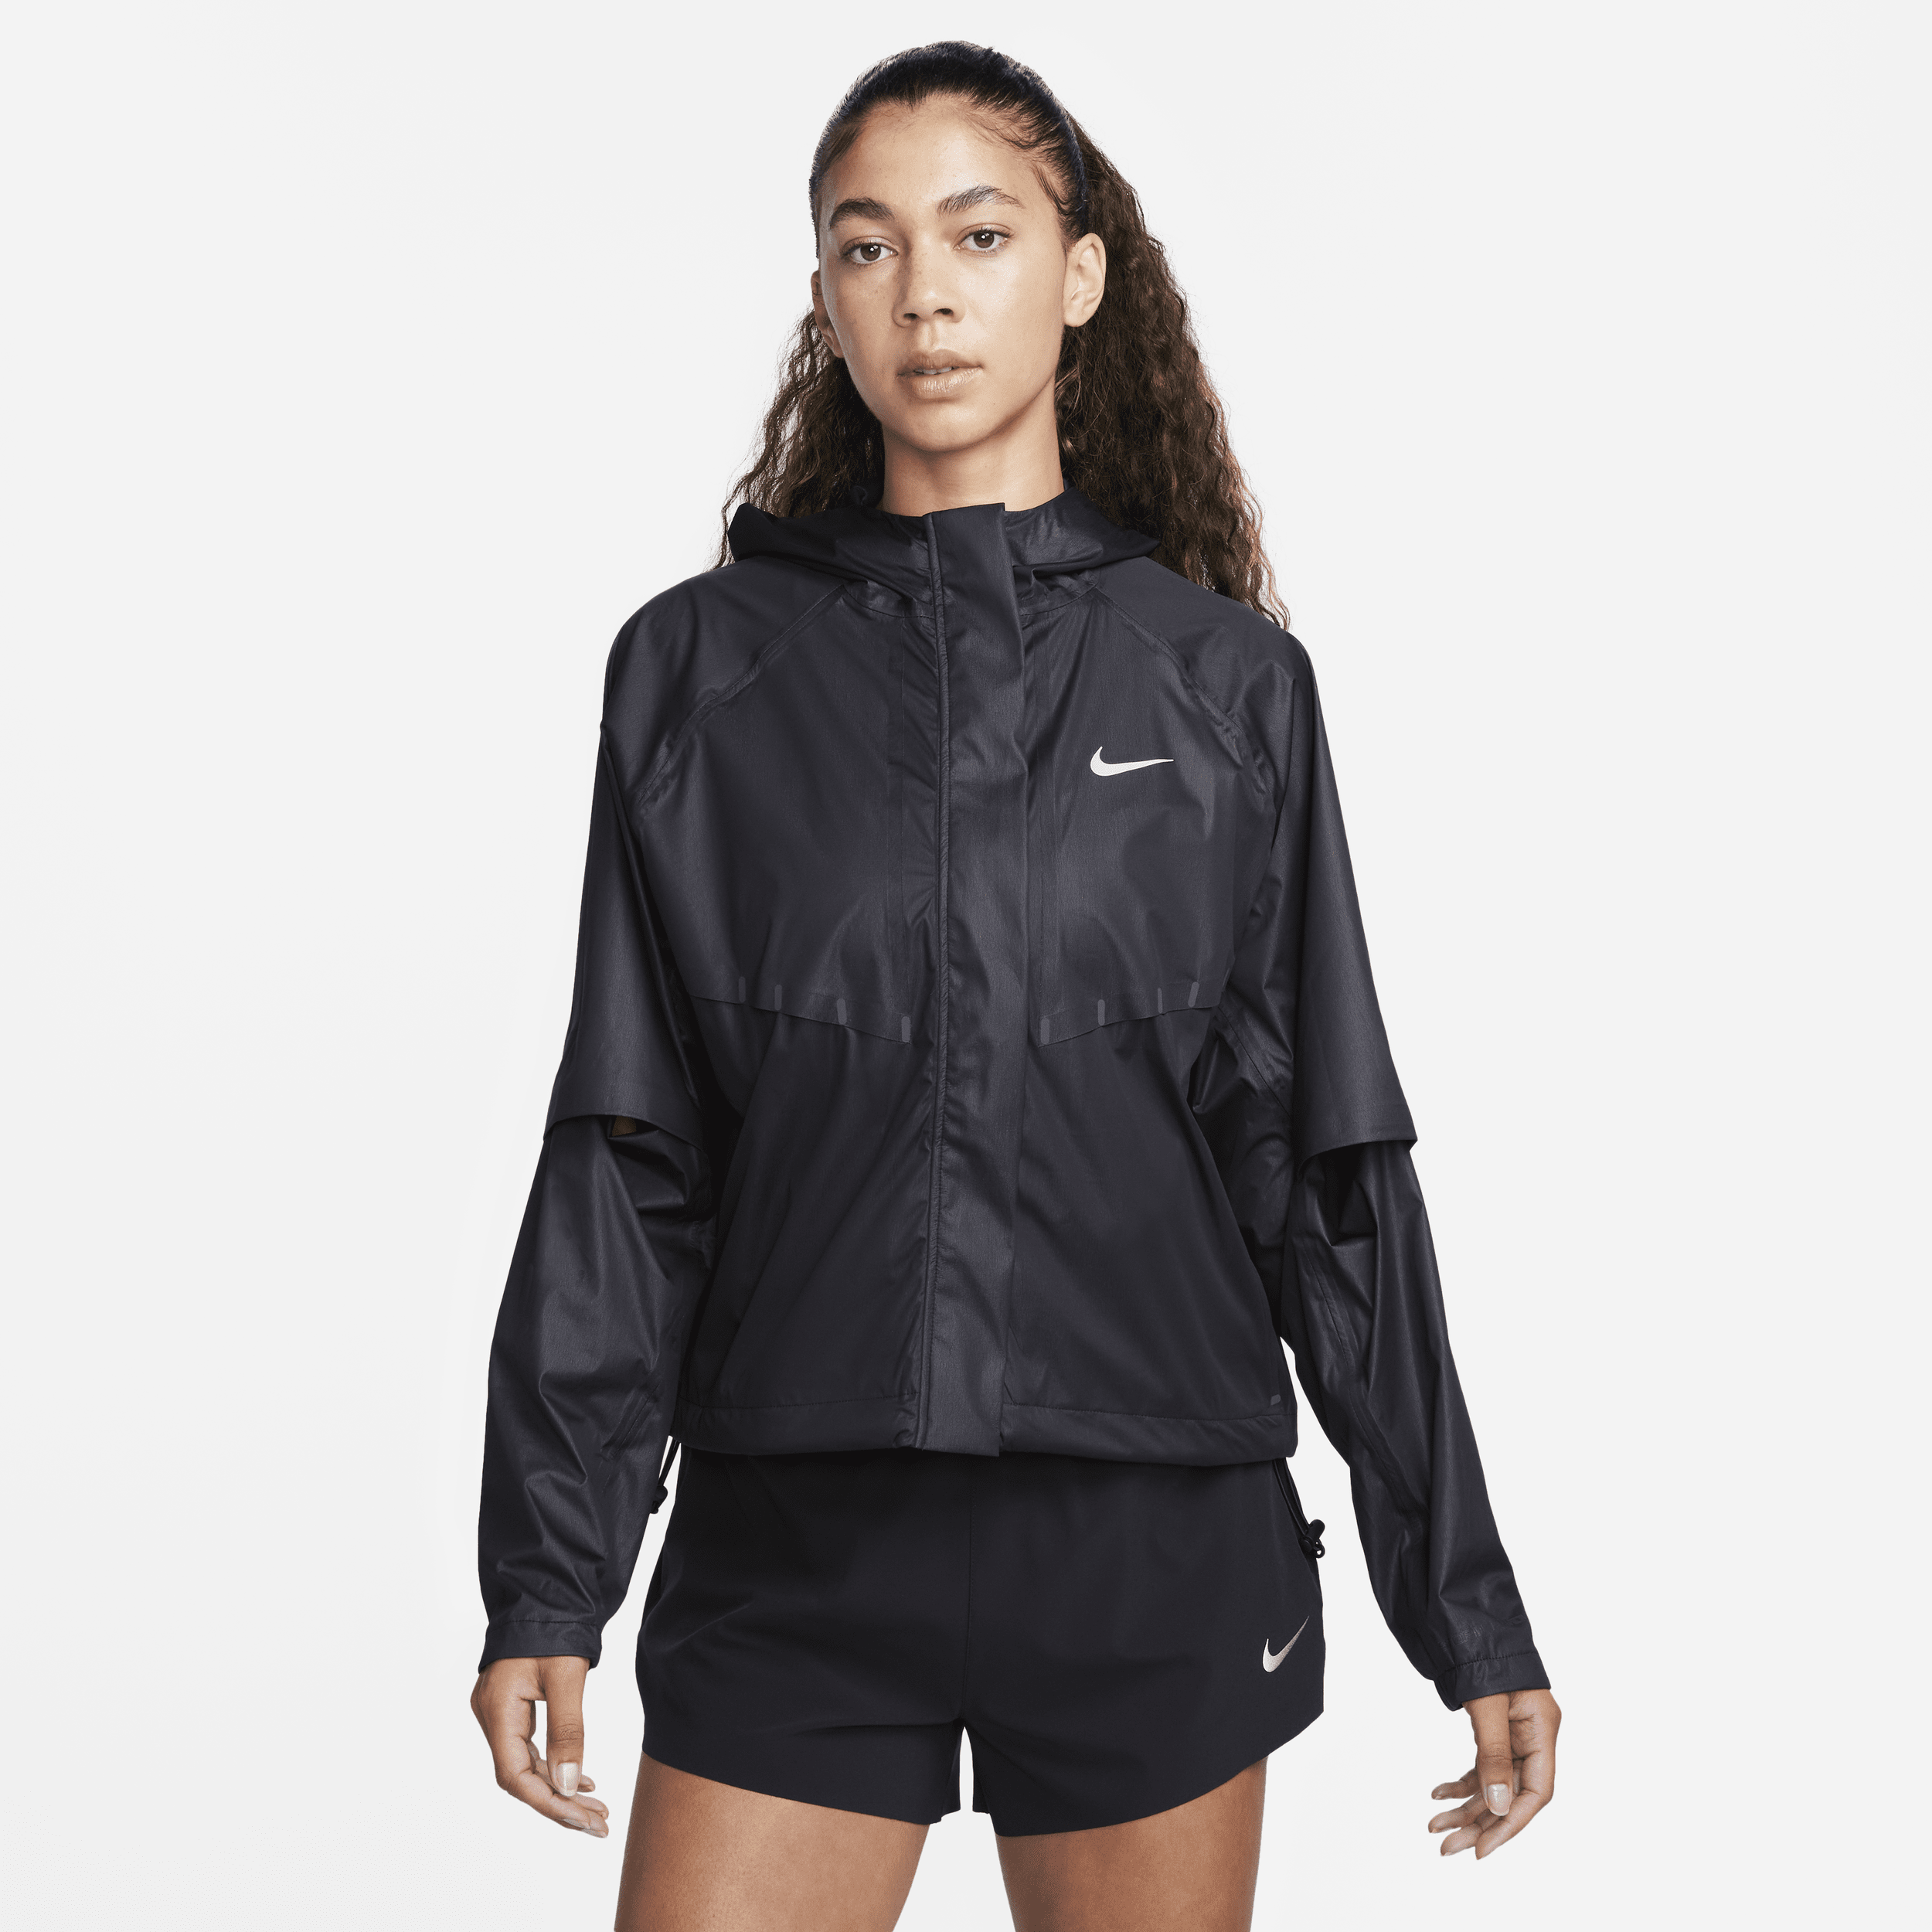 Nike Running Division Aerogami Storm-FIT ADV-jakke til kvinder - sort